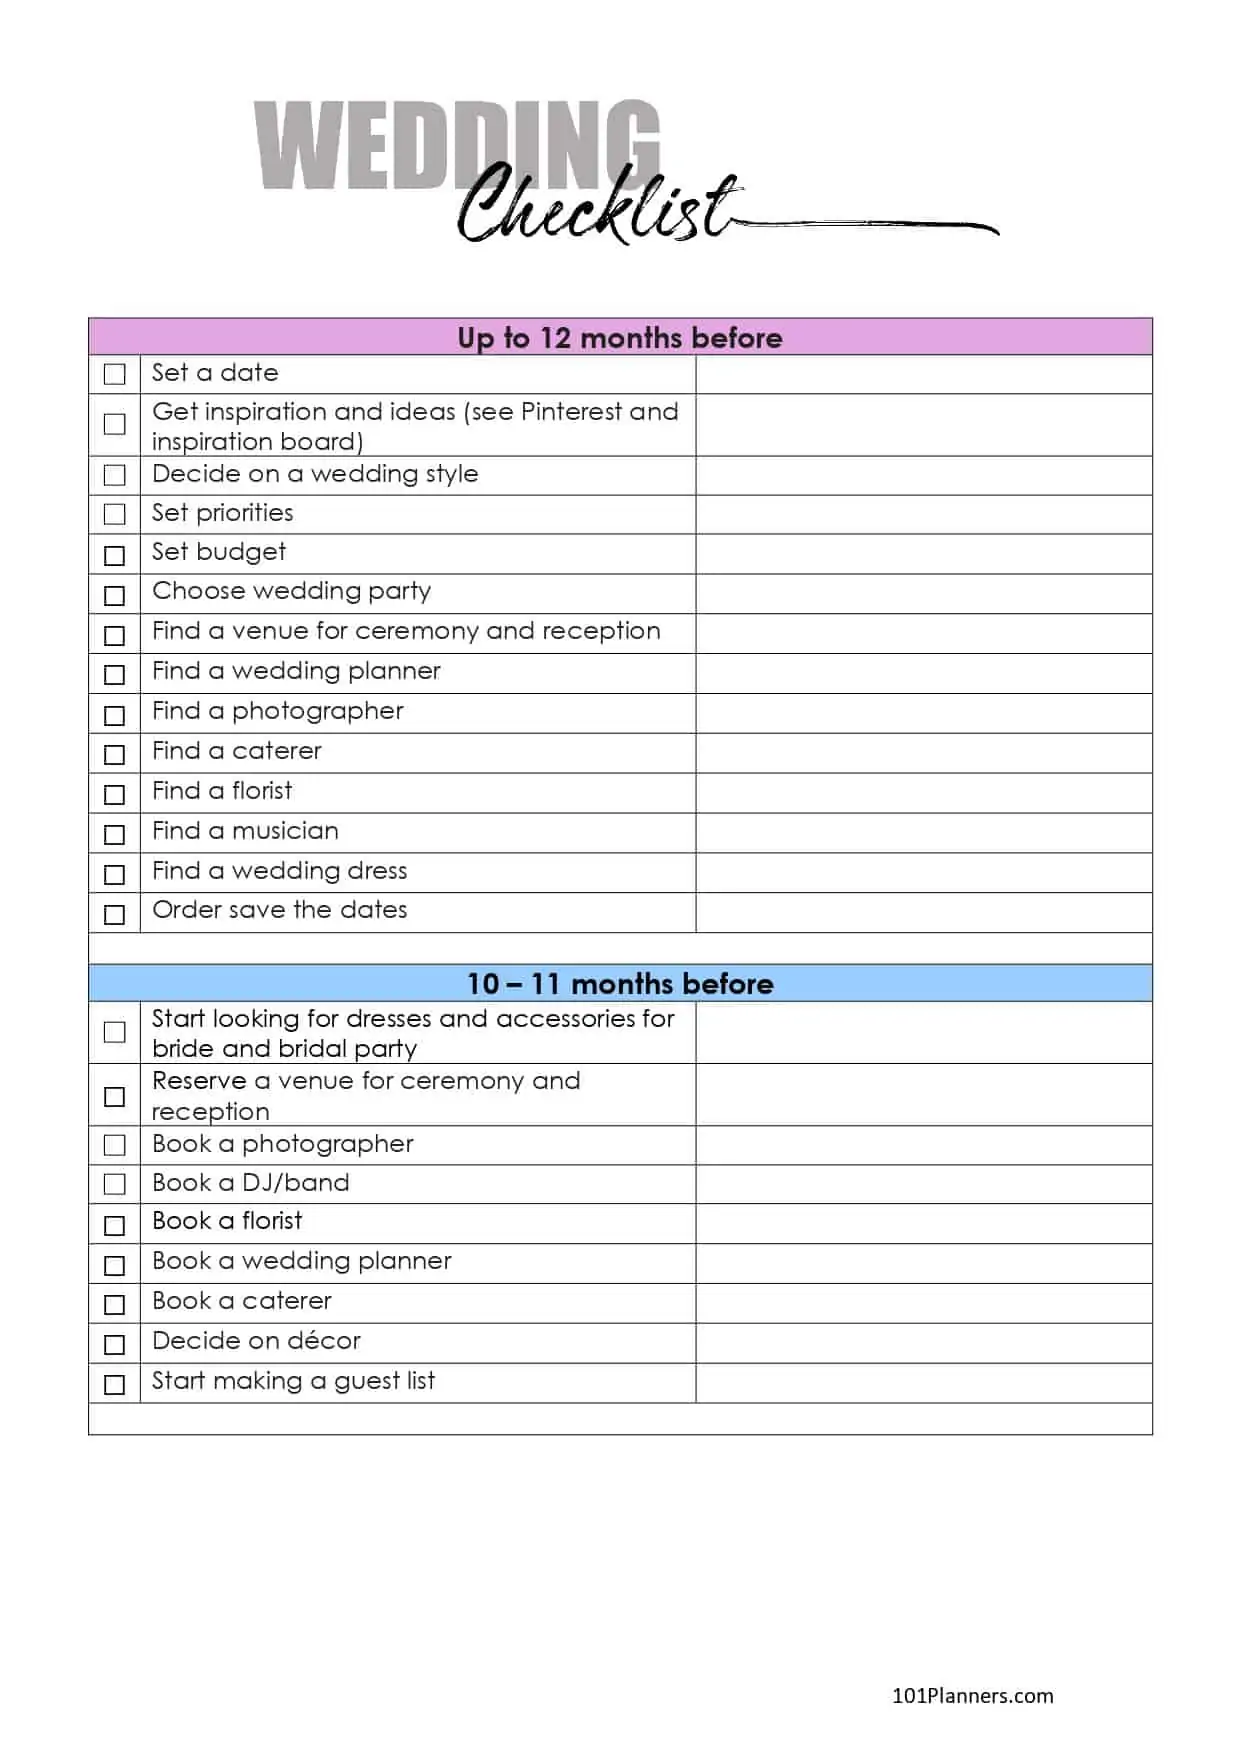 Free Wedding Checklist - Plan In Love  Wedding planner checklist, Wedding  planning timeline, Wedding planning checklist timeline